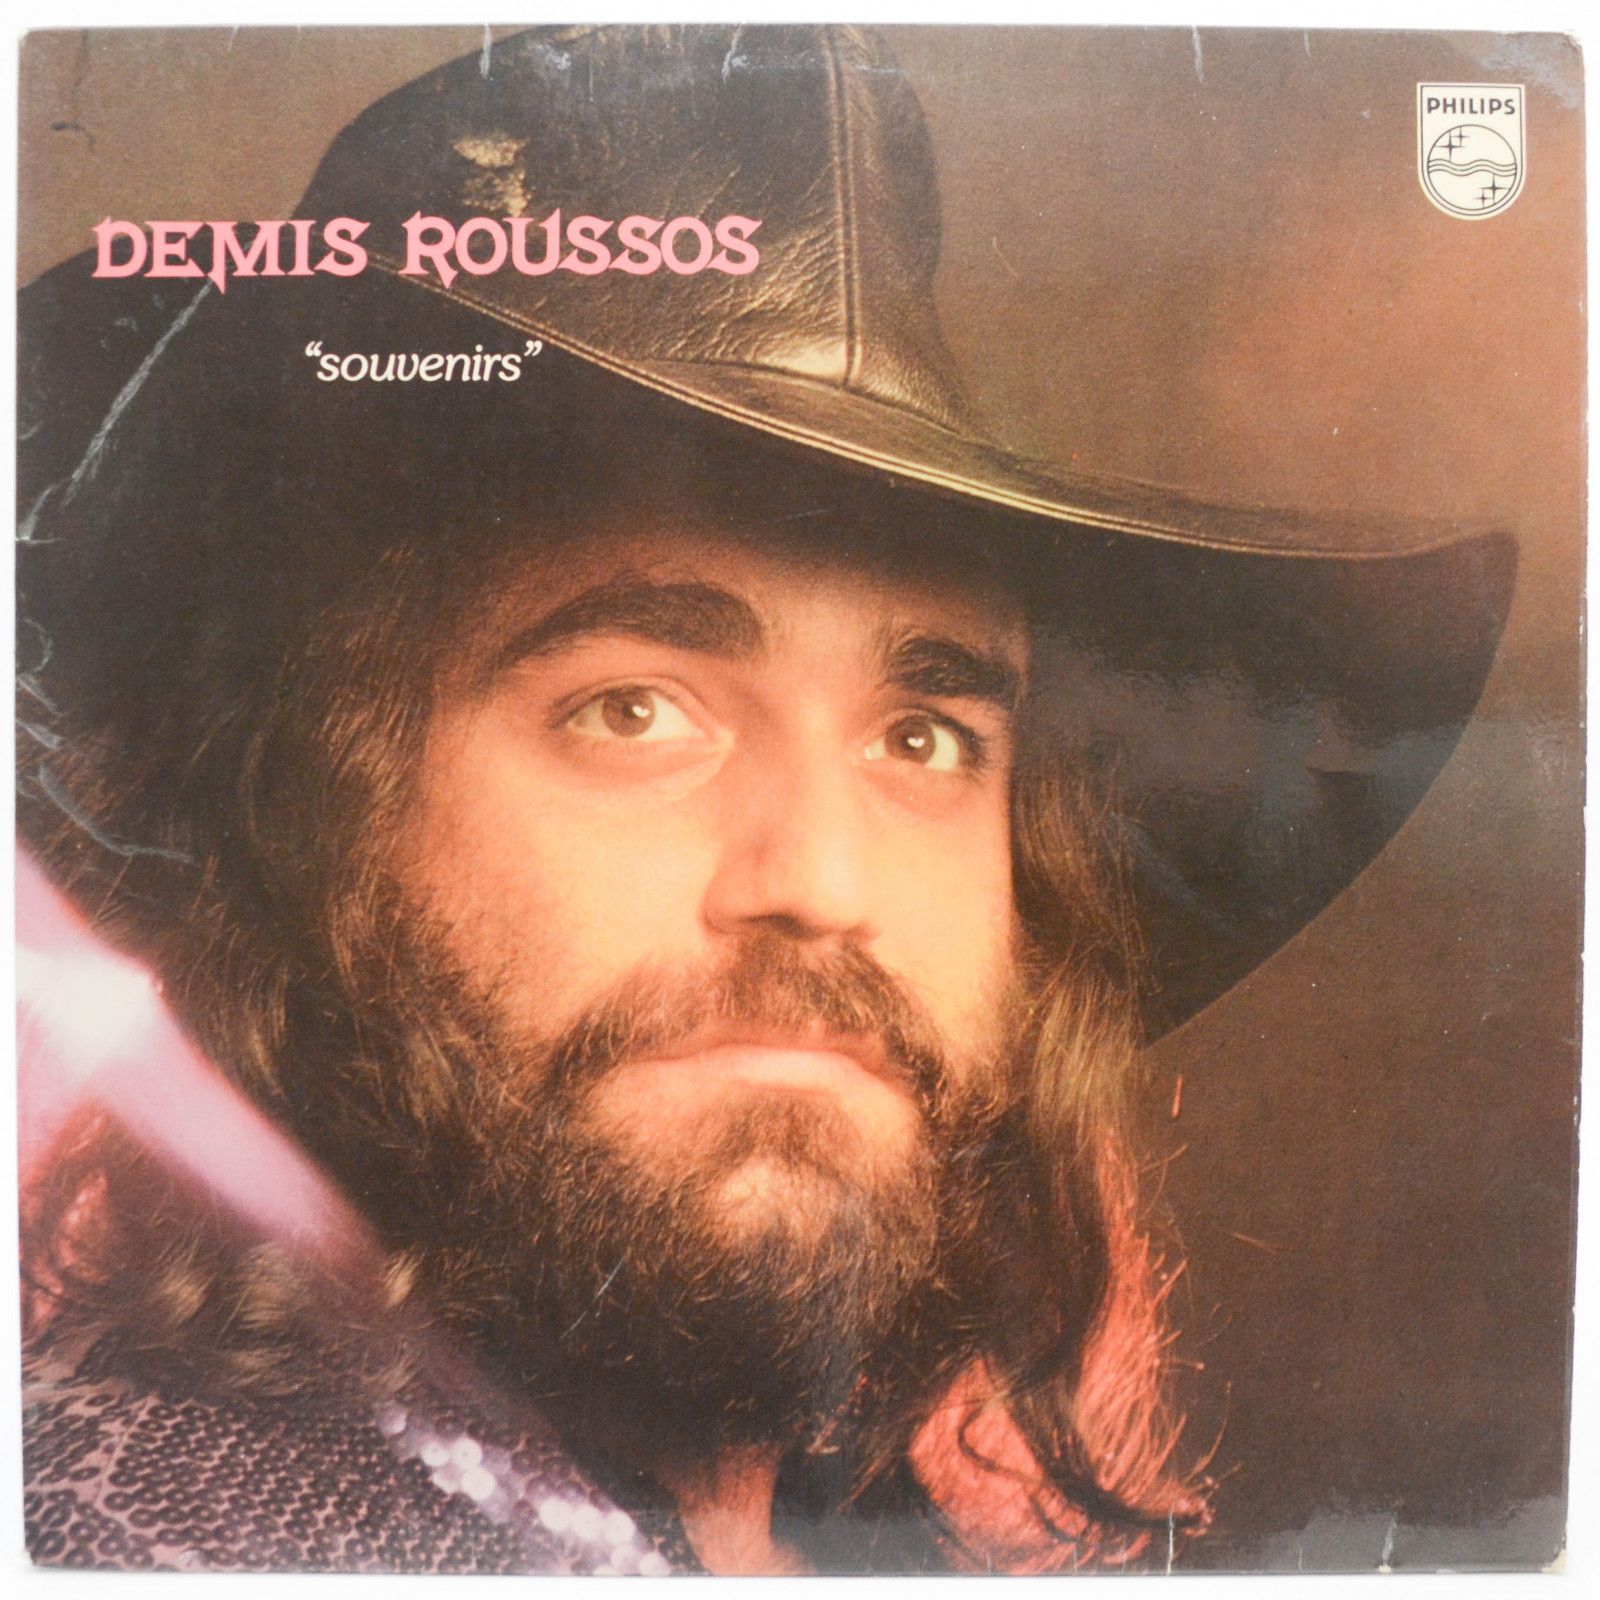 Demis Roussos — Souvenirs, 1975